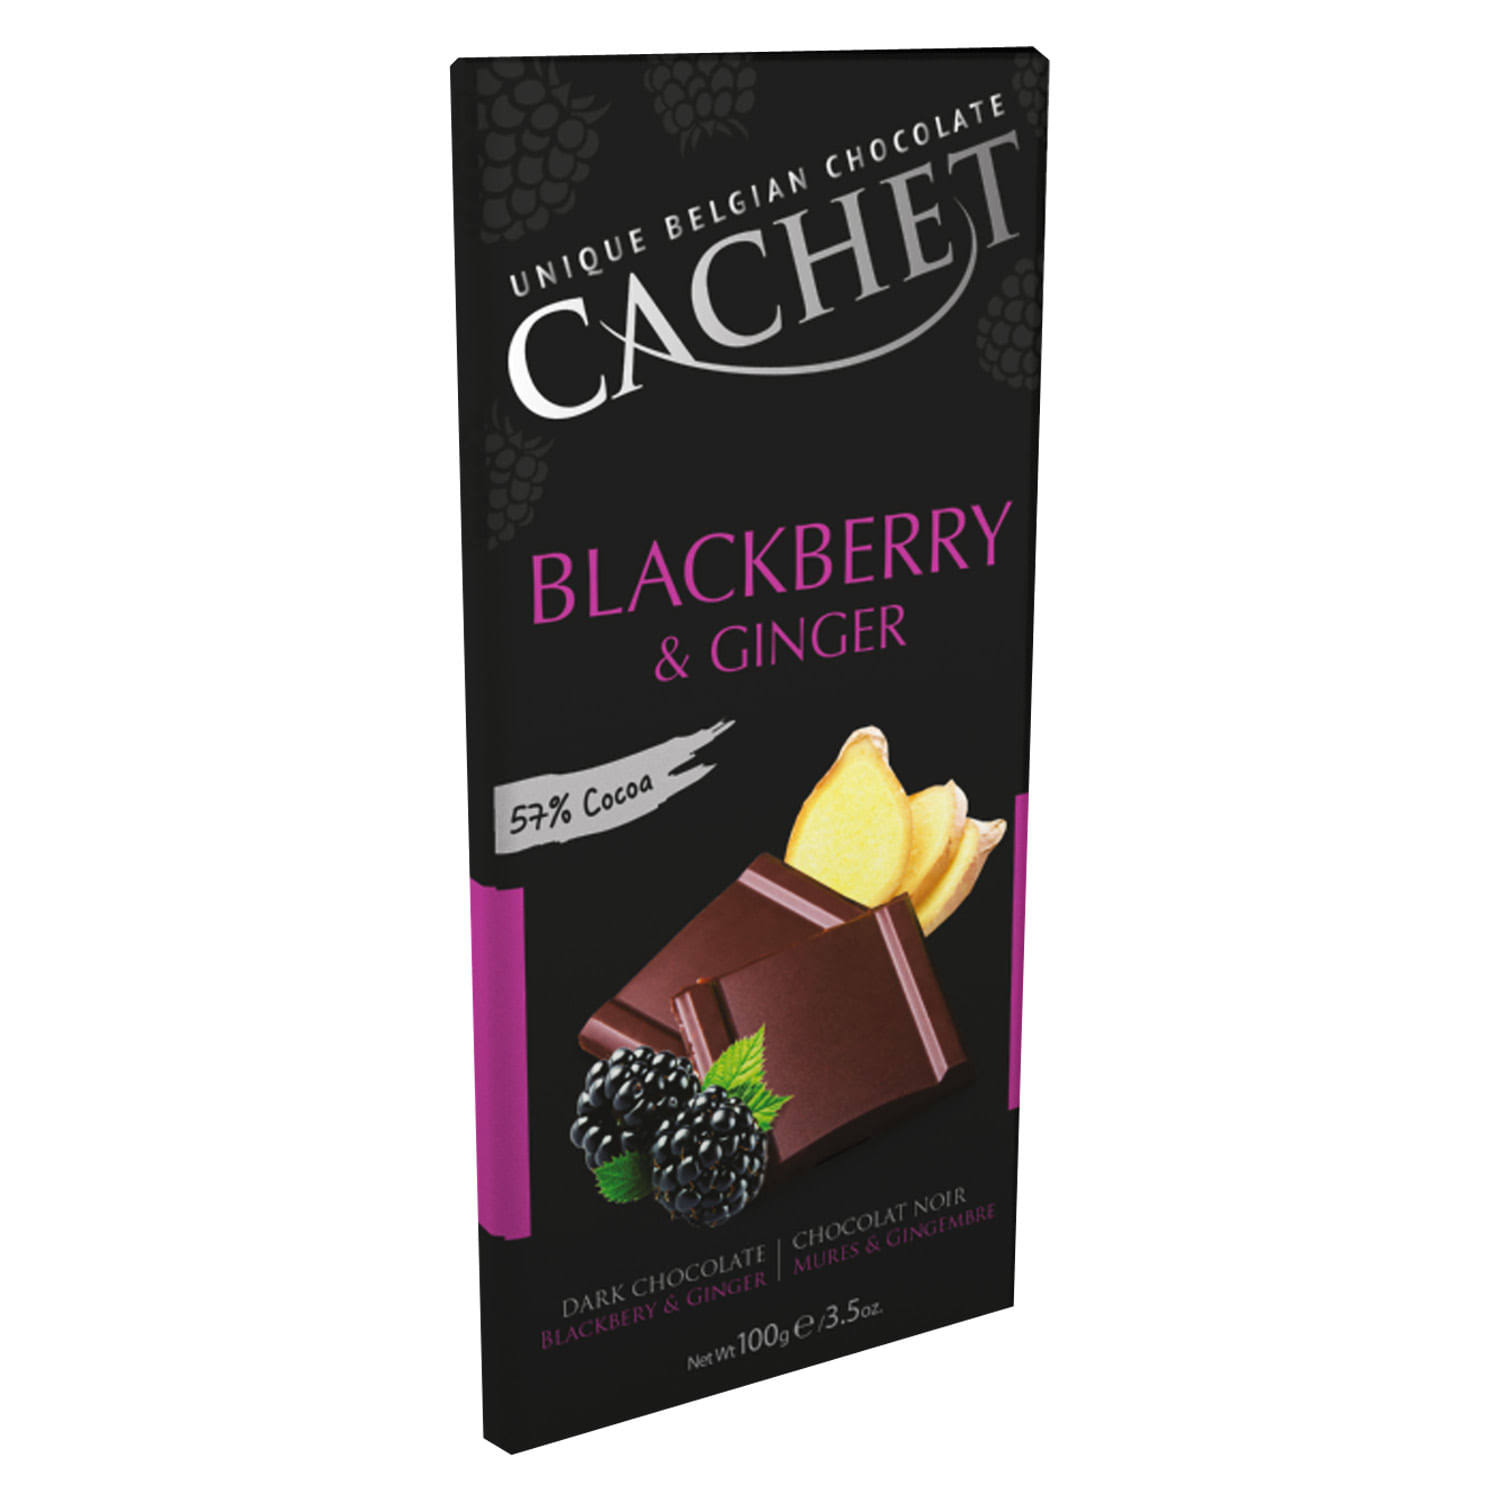 Cachet Dark Chocolate Bar - Blackberry & Ginger, 100g